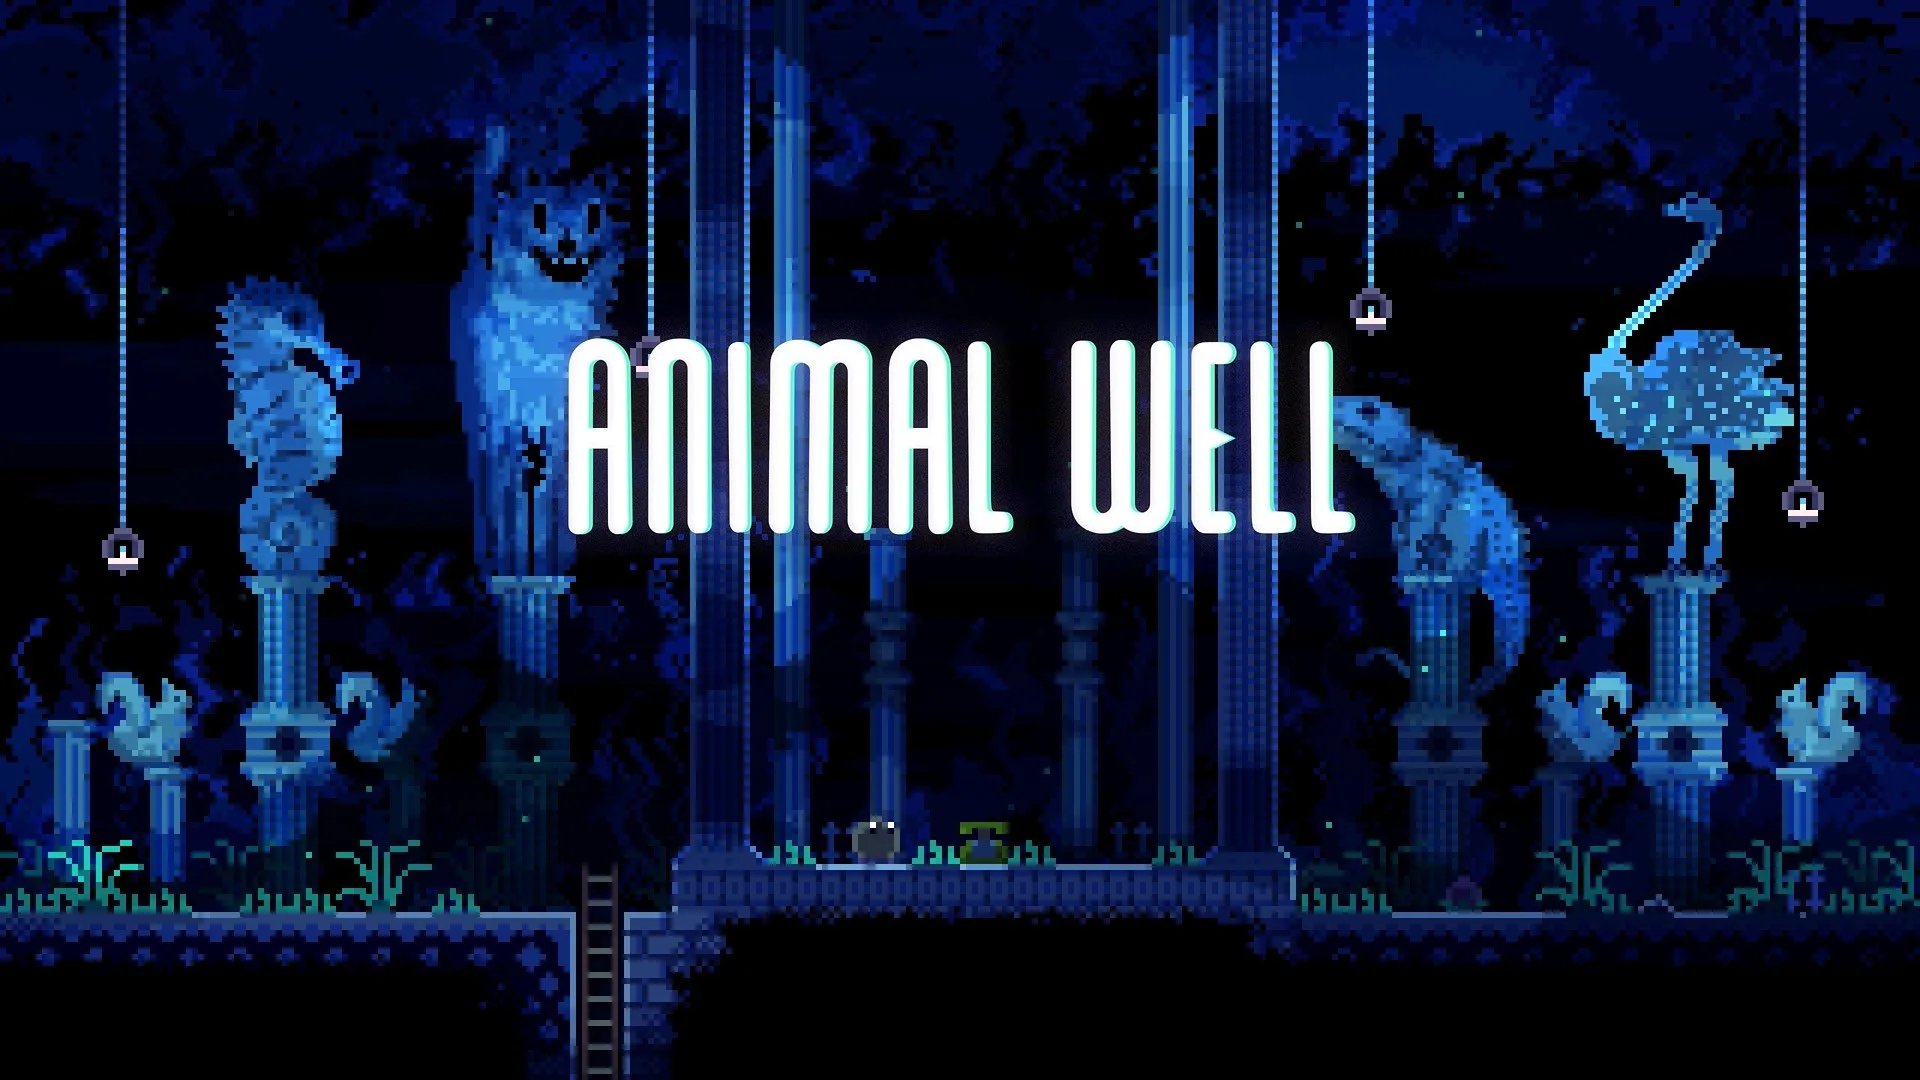 نقد و بررسی بازی Animal Well